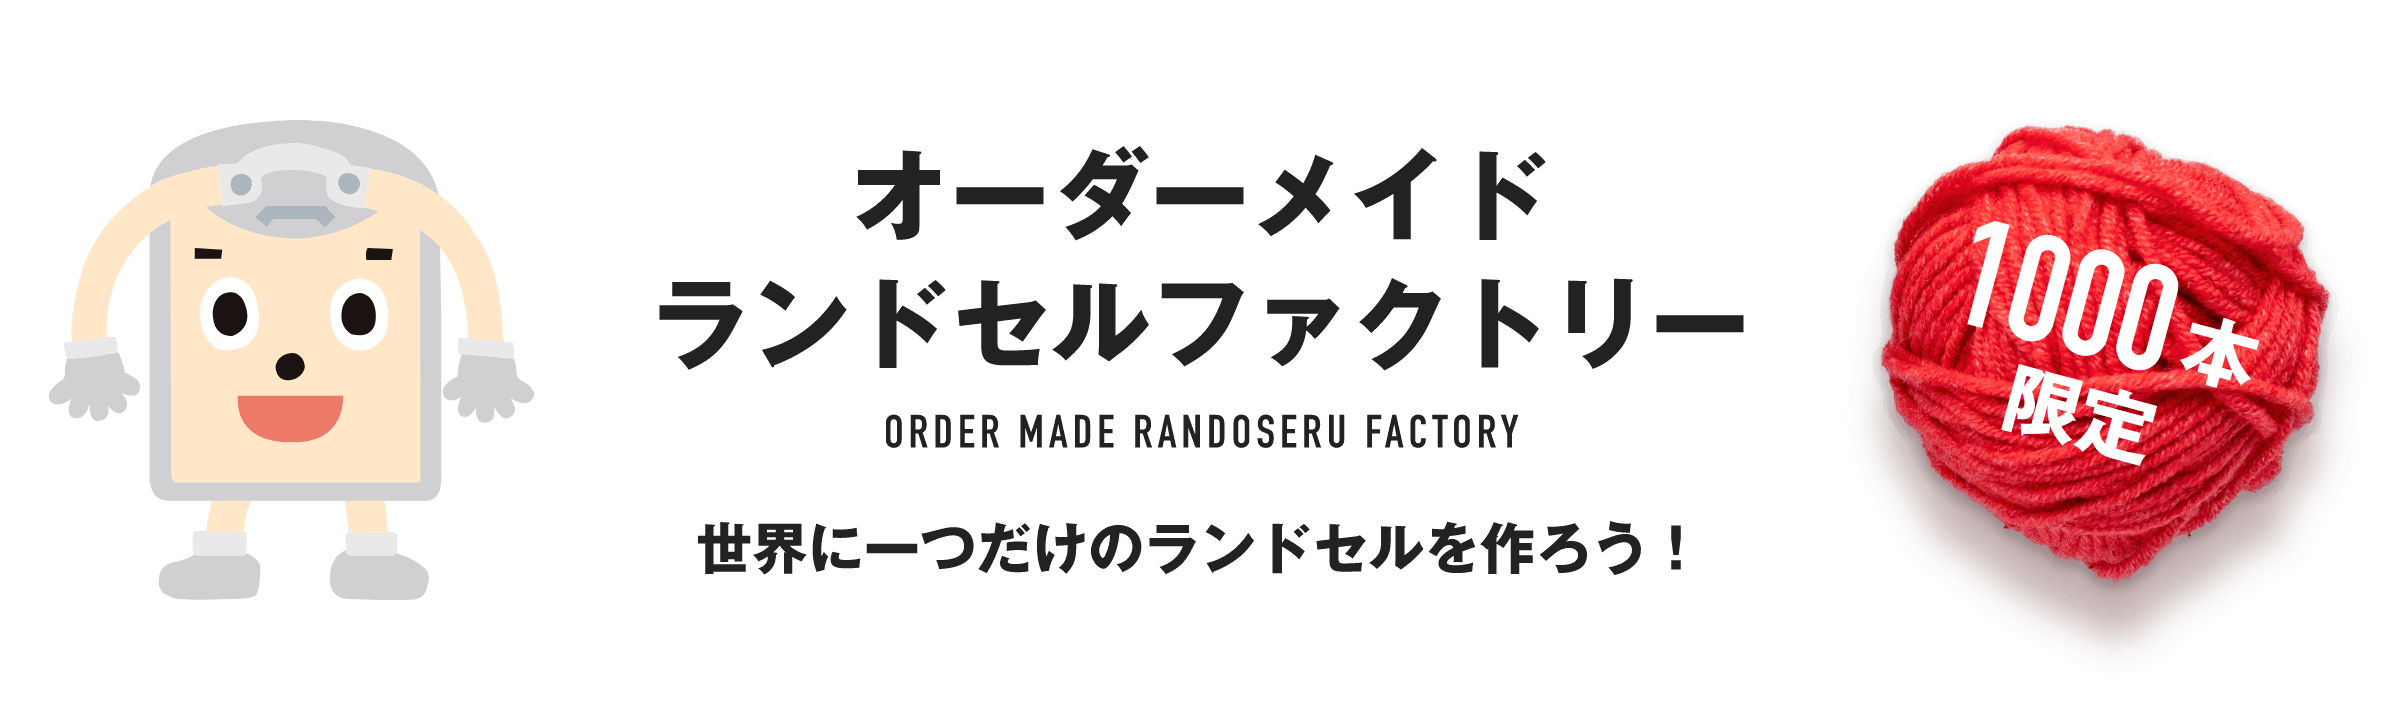 オーダーメイドランドセルファクトリー ORDER MADE RANDOSERU FACTORY 世界に一つだけのランドセルを作ろう！